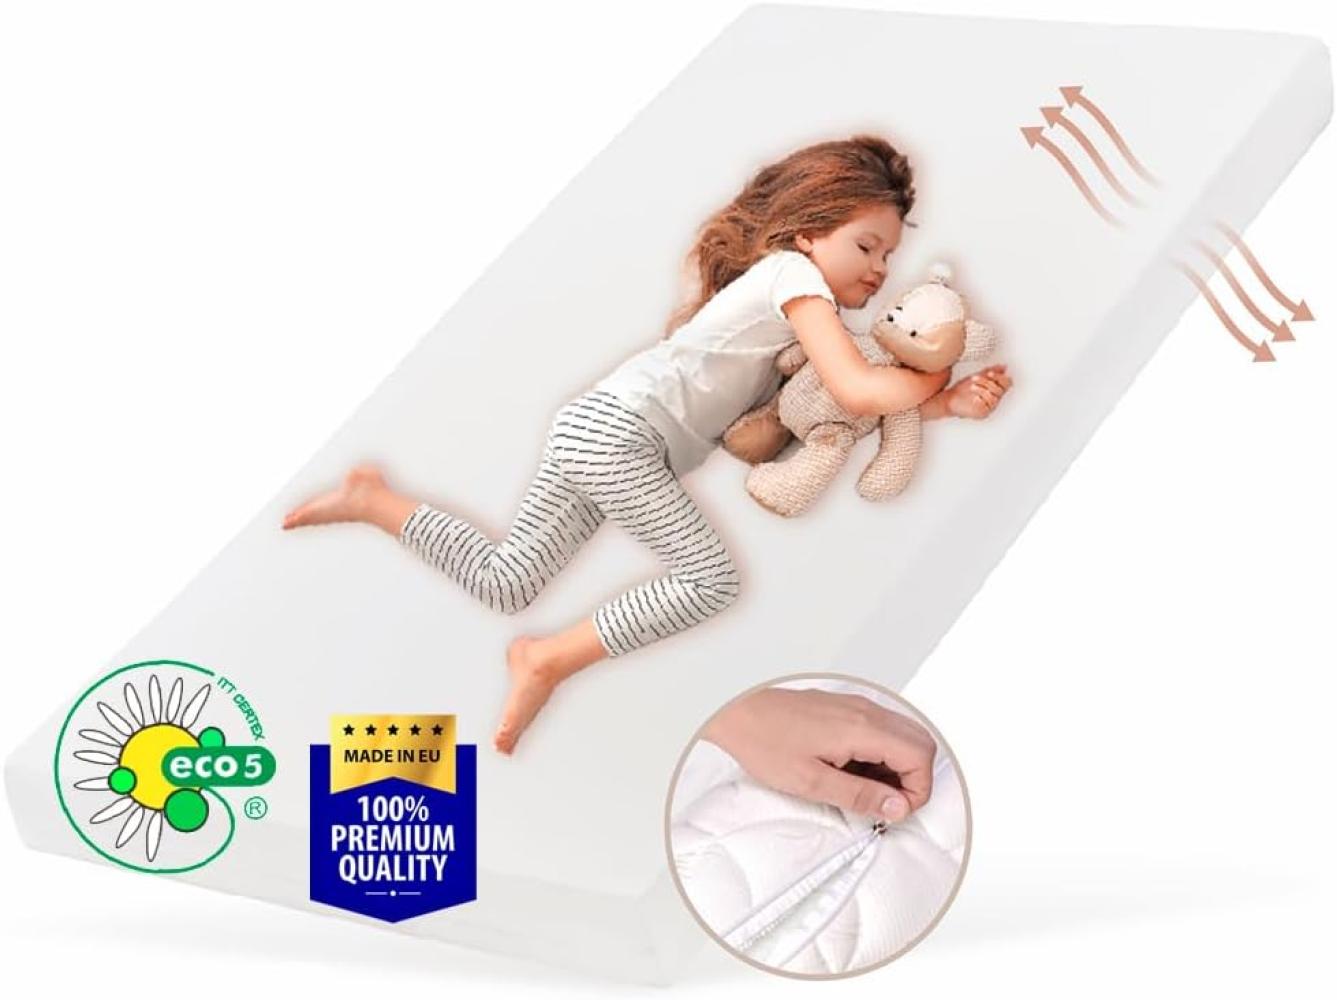 Kids Collective Kindermatratze SMART, Babymatratze 80x180 cm mit abnehmbarem Bezug, waschbar bei 60°C für Kinderbett, 180x80 cm, 8cm hoch, eco5 Zertifiziert Bild 1